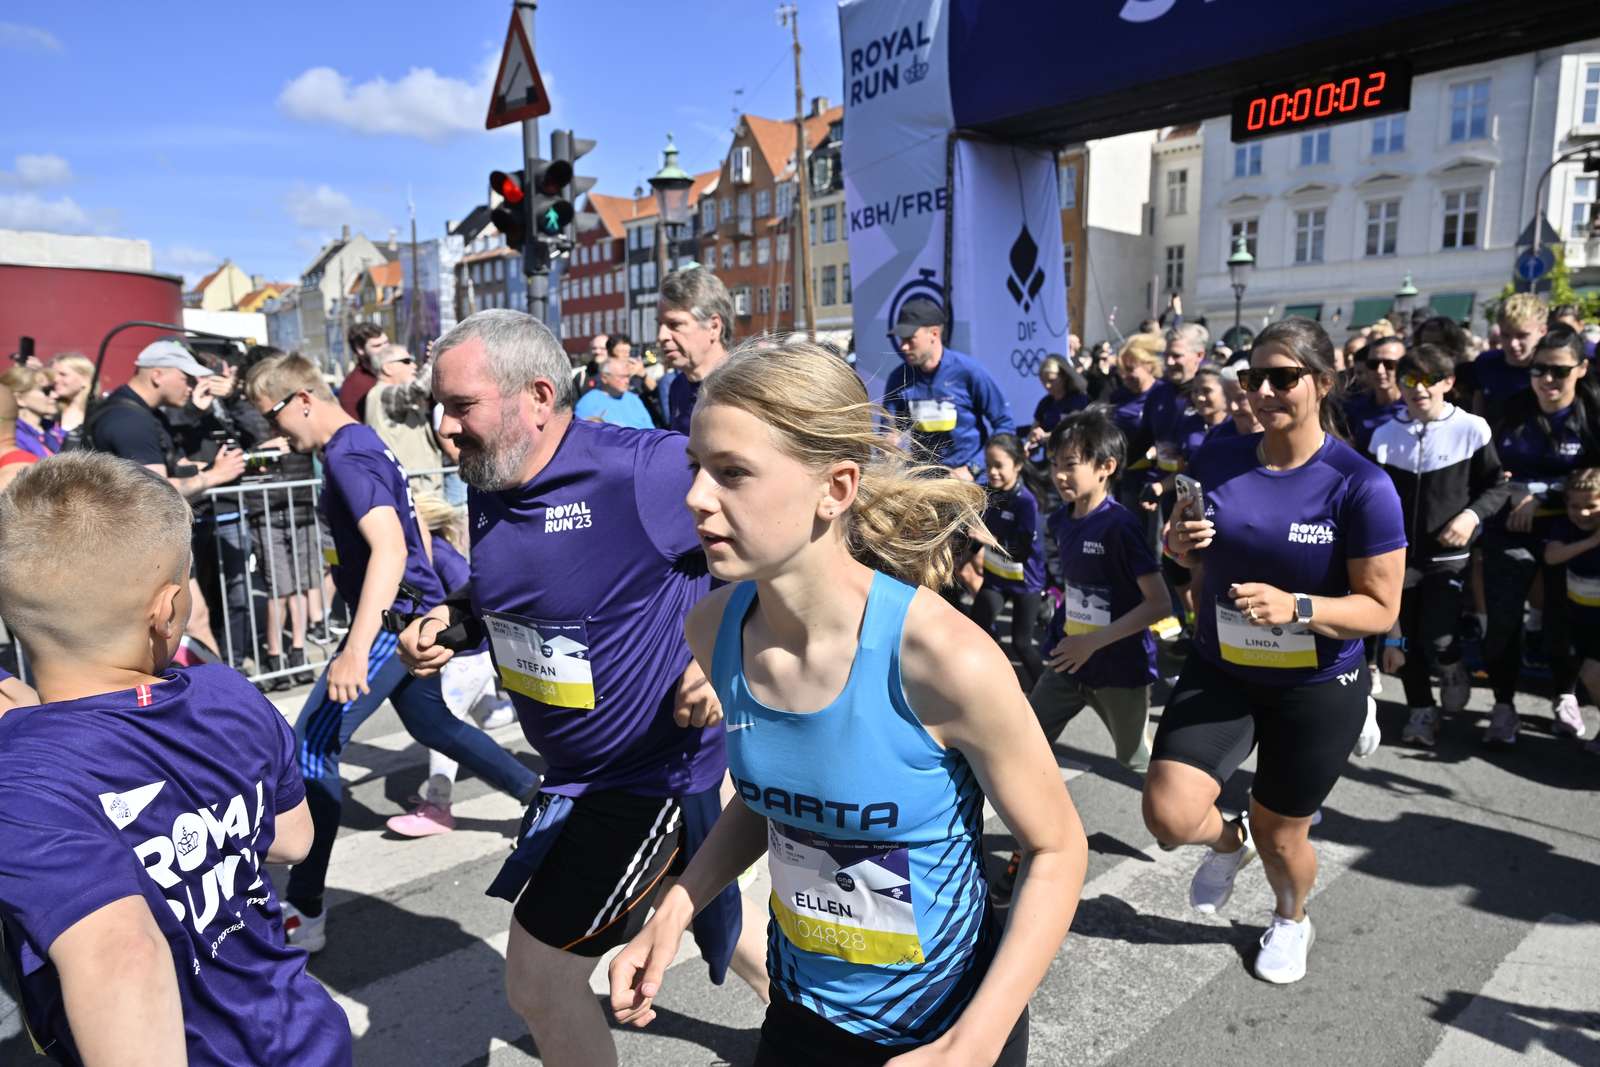 Royal Run 2023 - København/Frederiksbergg